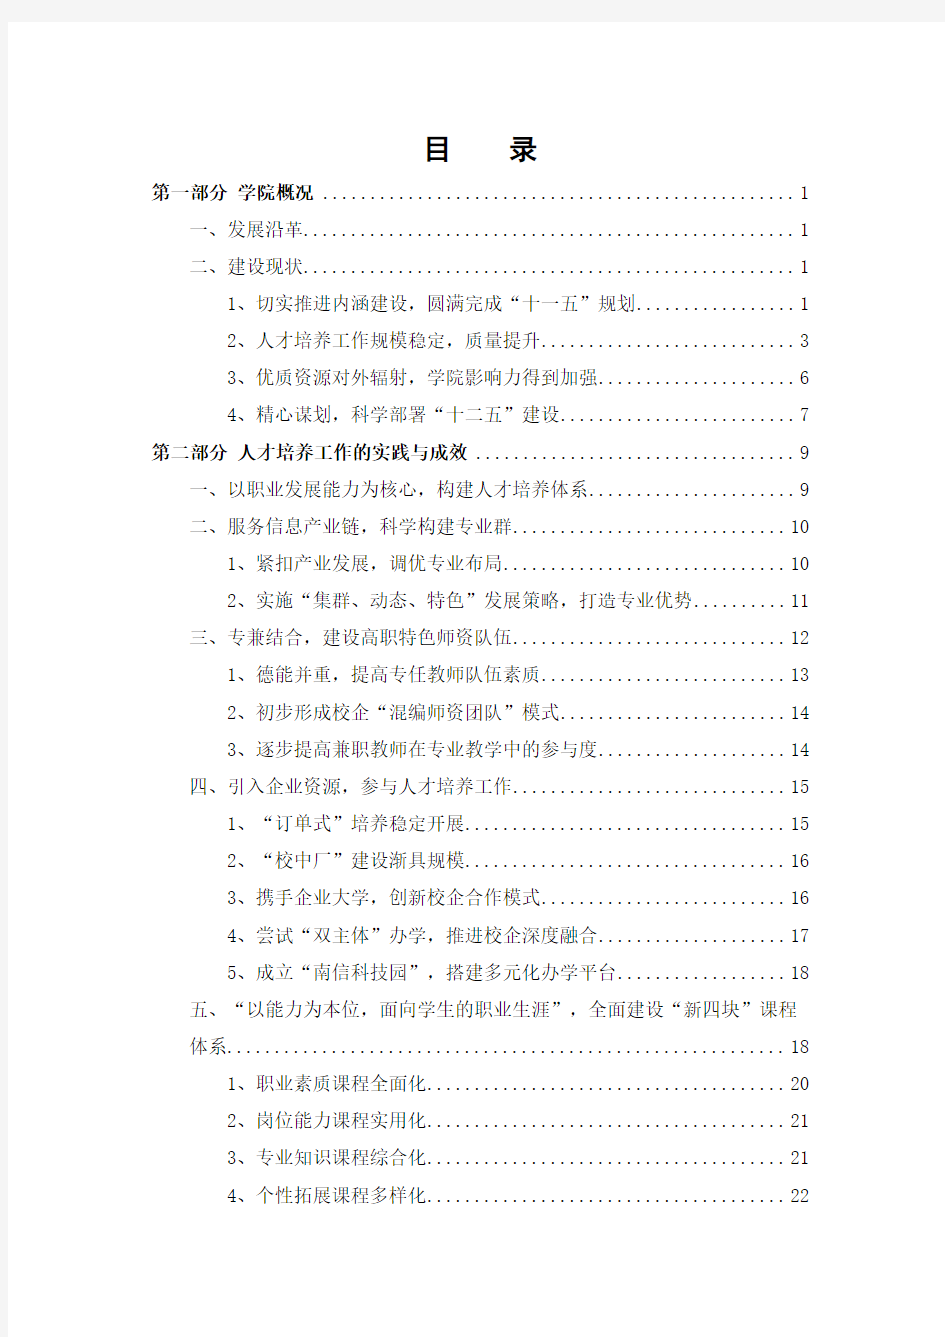 南京信息职业技术学院人才培养工作自评报告